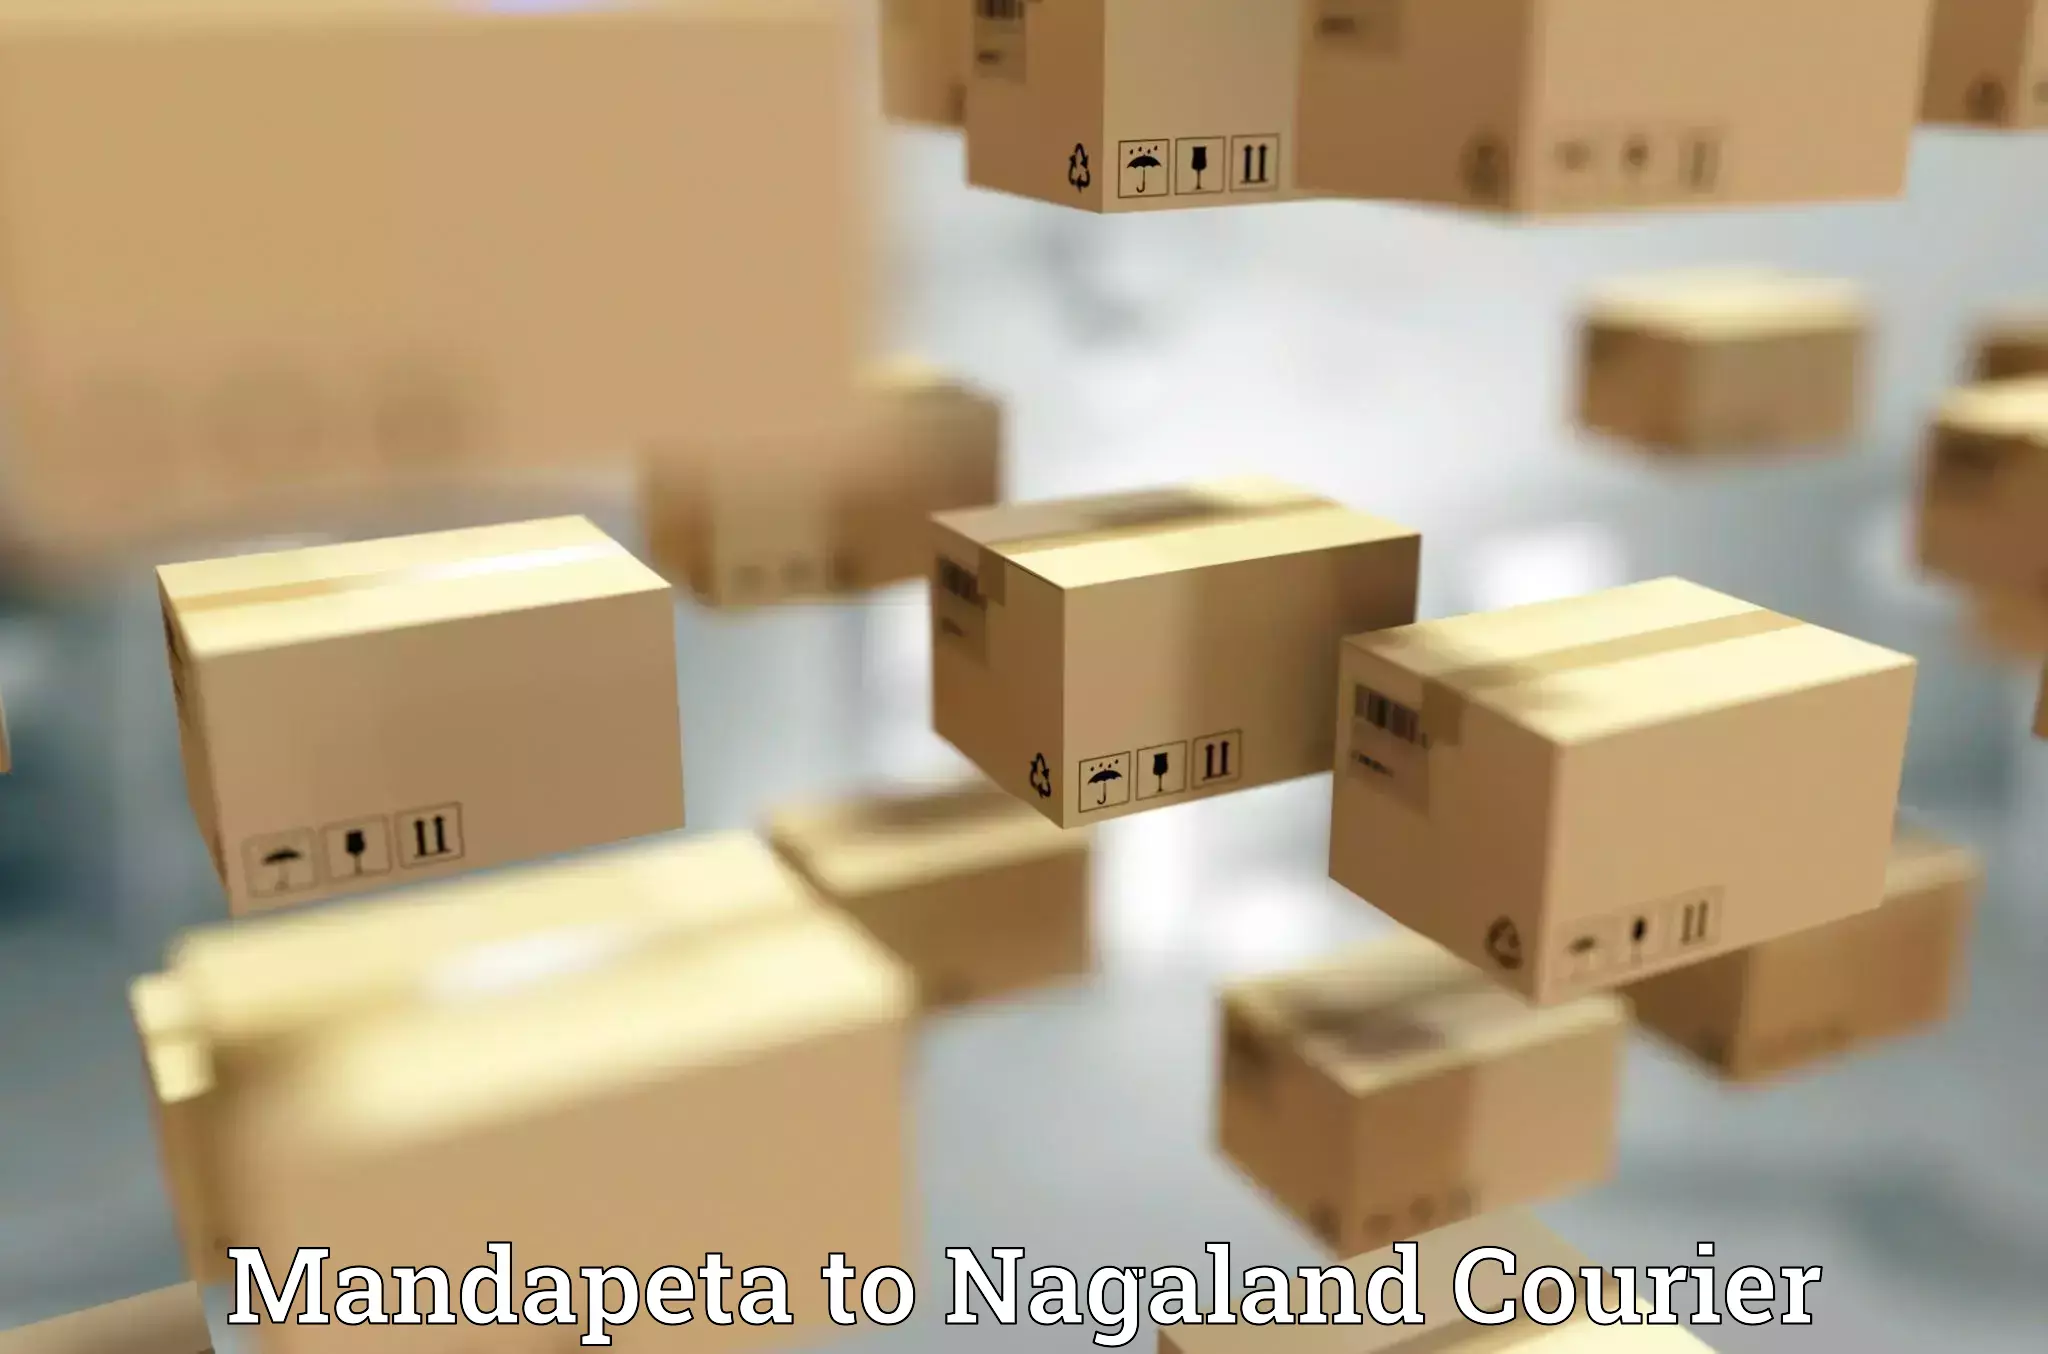 Urgent courier needs Mandapeta to Dimapur